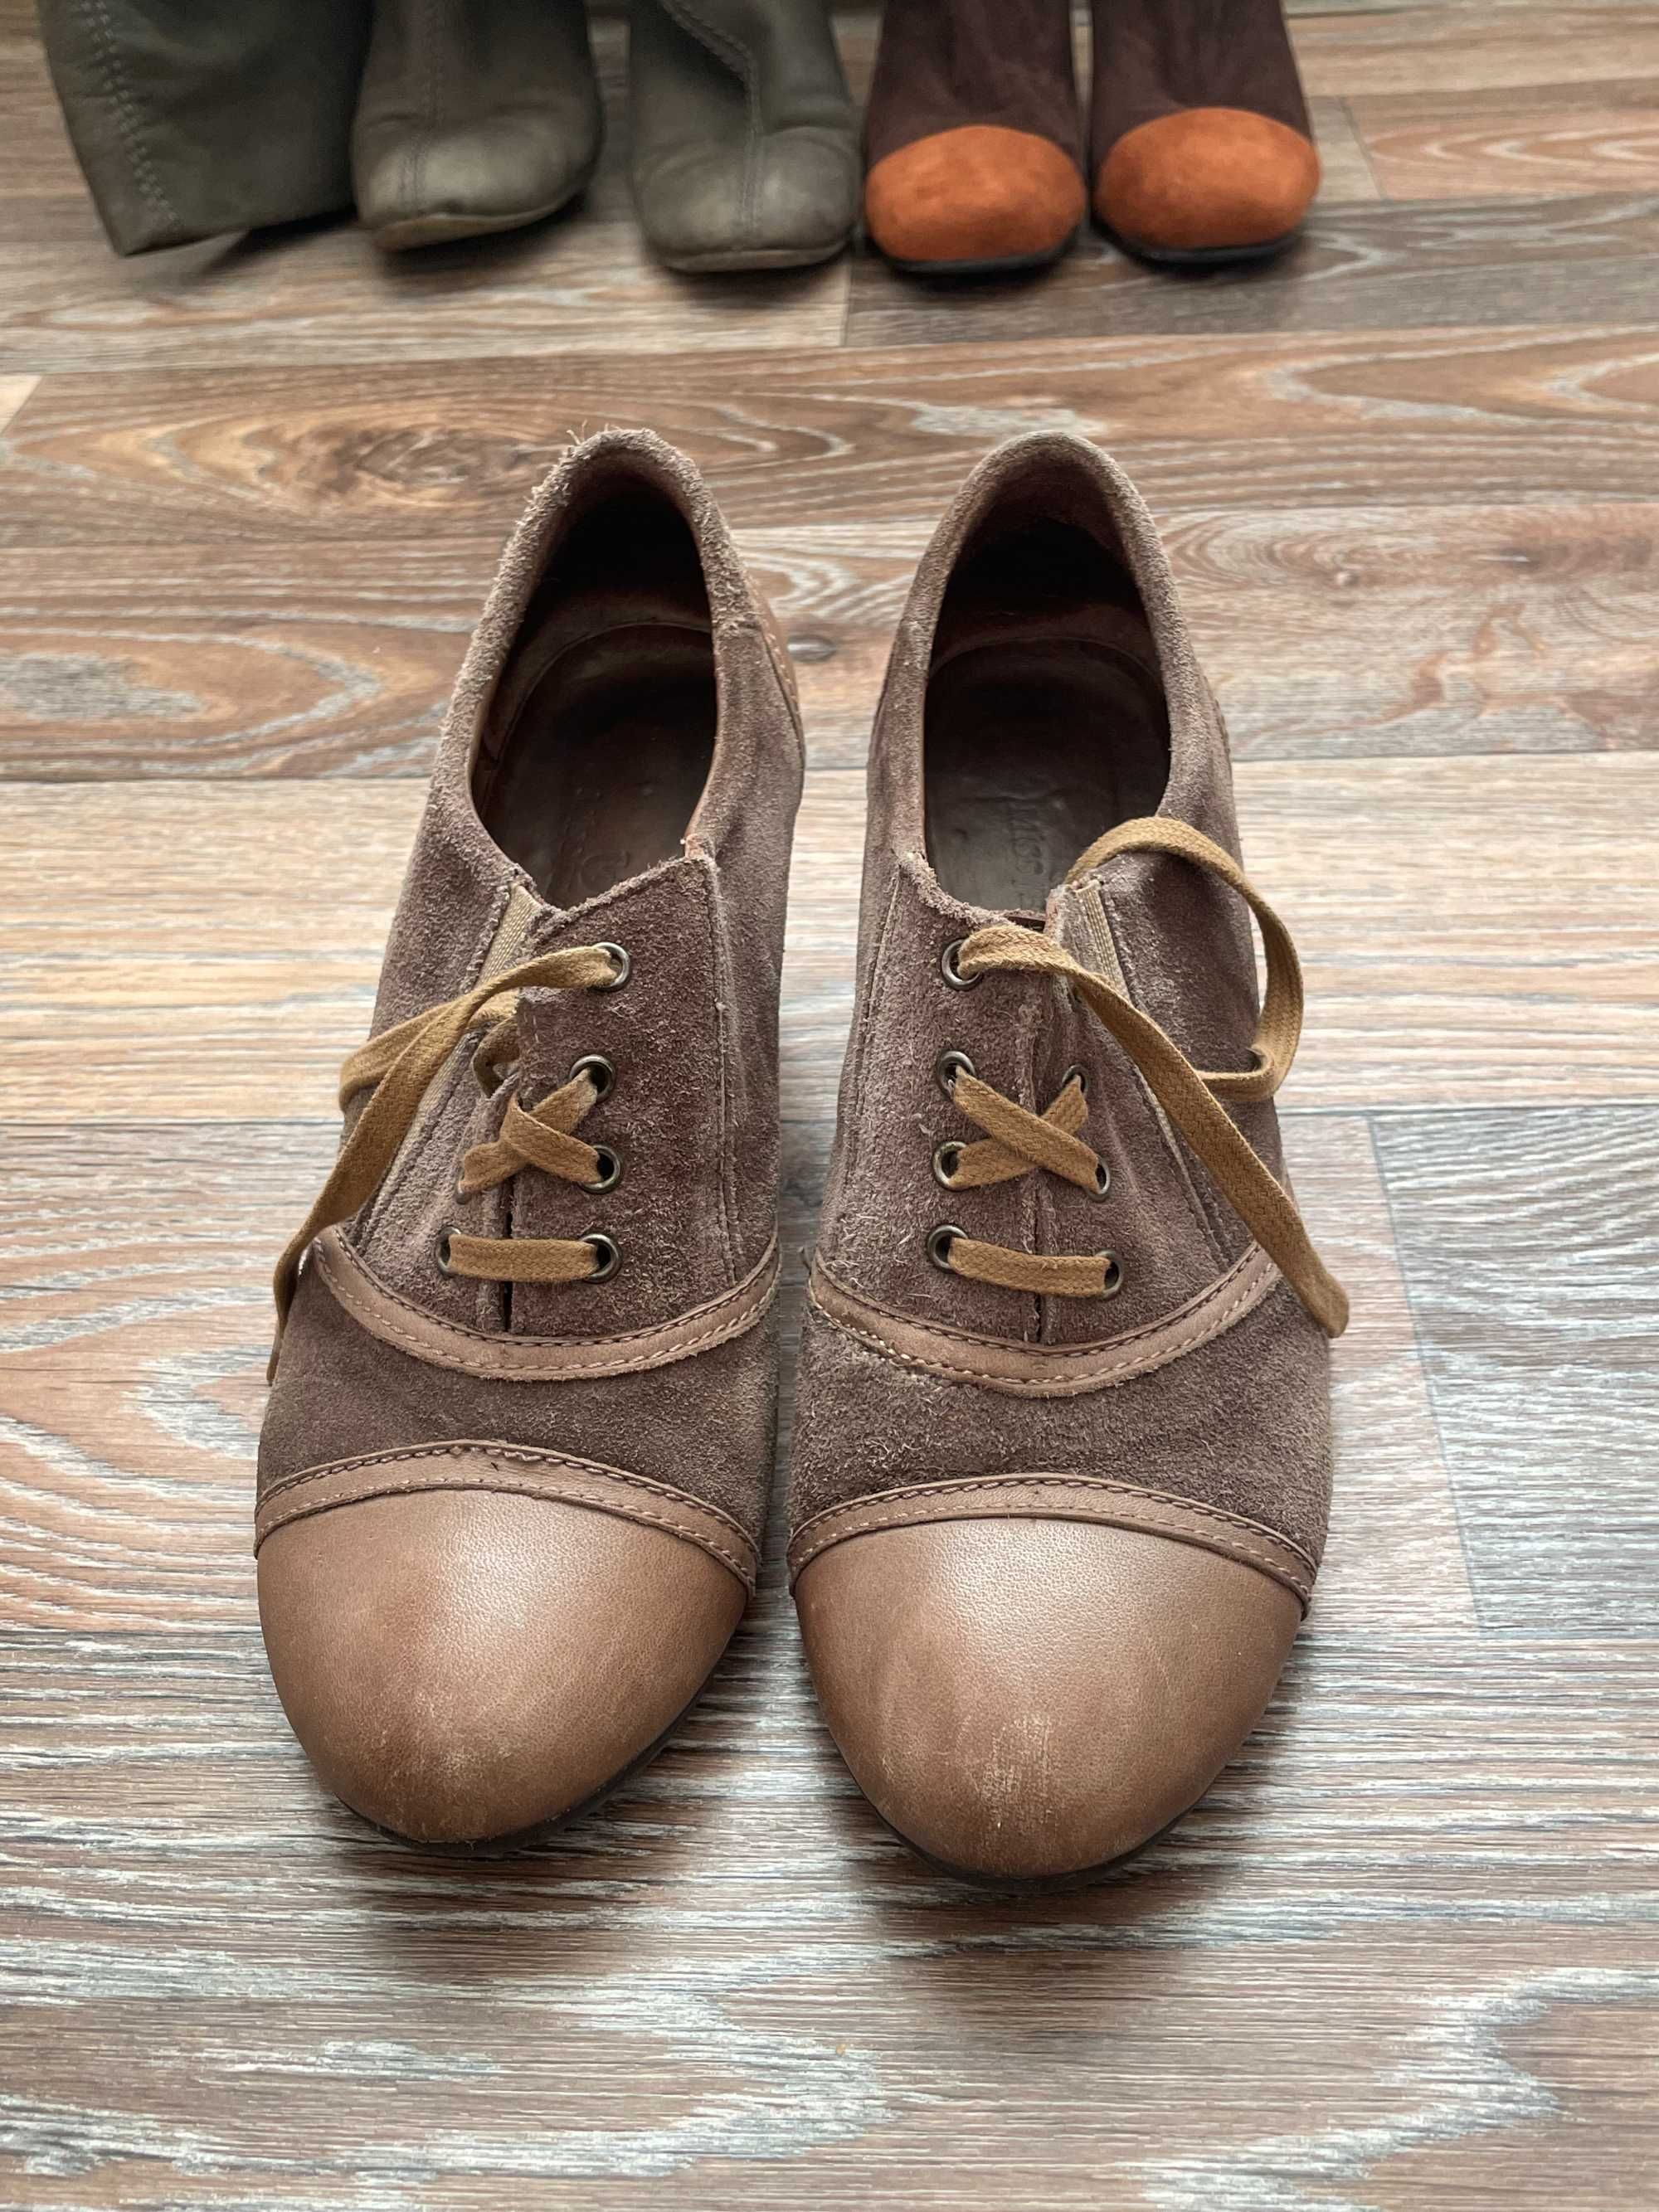 женская обувь: сапоги, ботинки (39 размер)